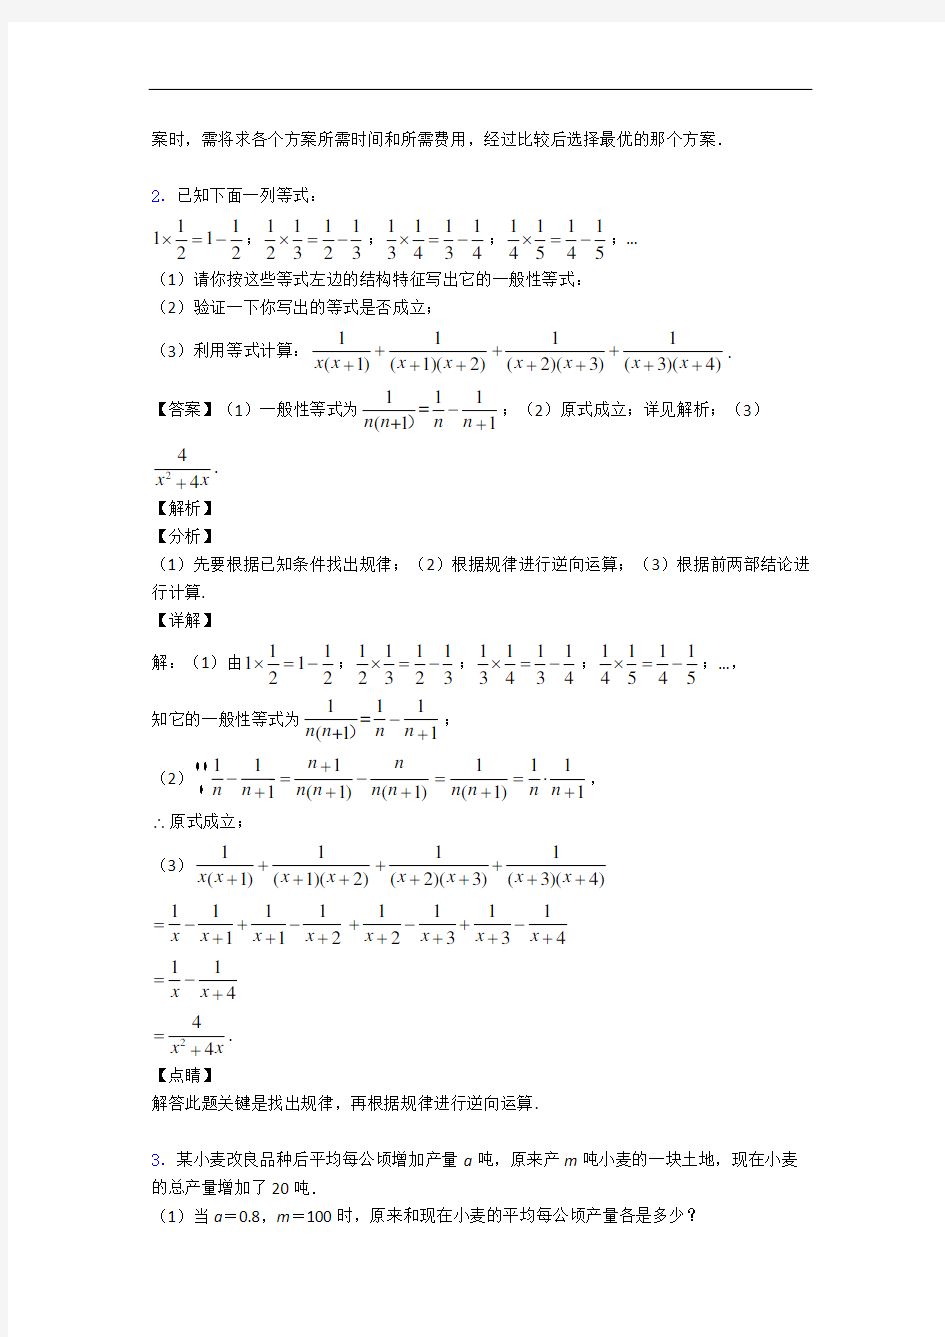 上海阳光外国语学校数学分式解答题专题练习(解析版)